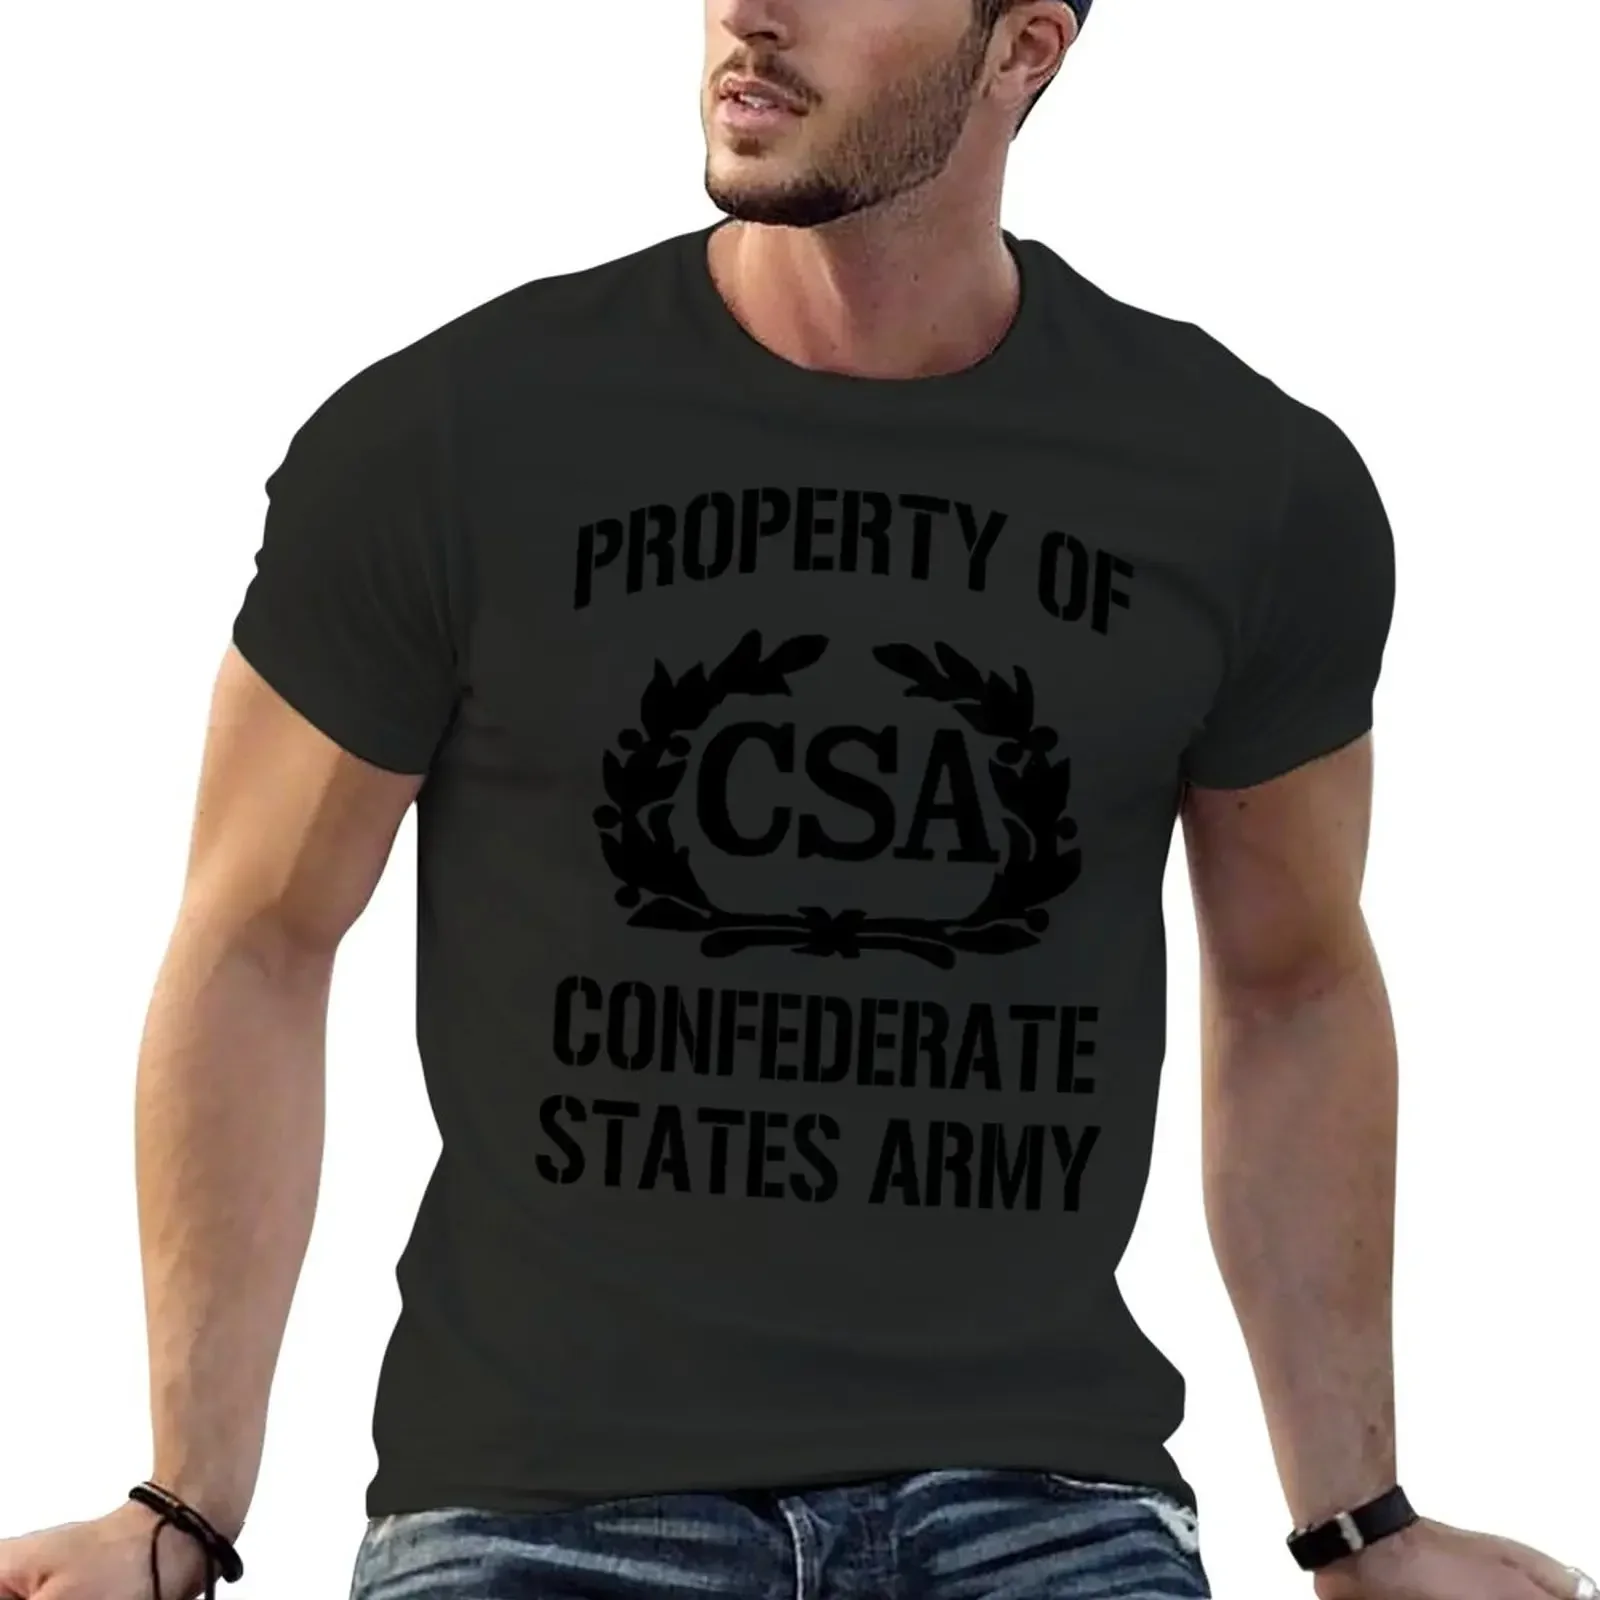 

Короткая милая одежда с забавным графическим принтом в виде слангского мема, трендовая смешная футболка с коротким рукавом из 100% хлопка, винтажная Мужская армейская футболка States Army